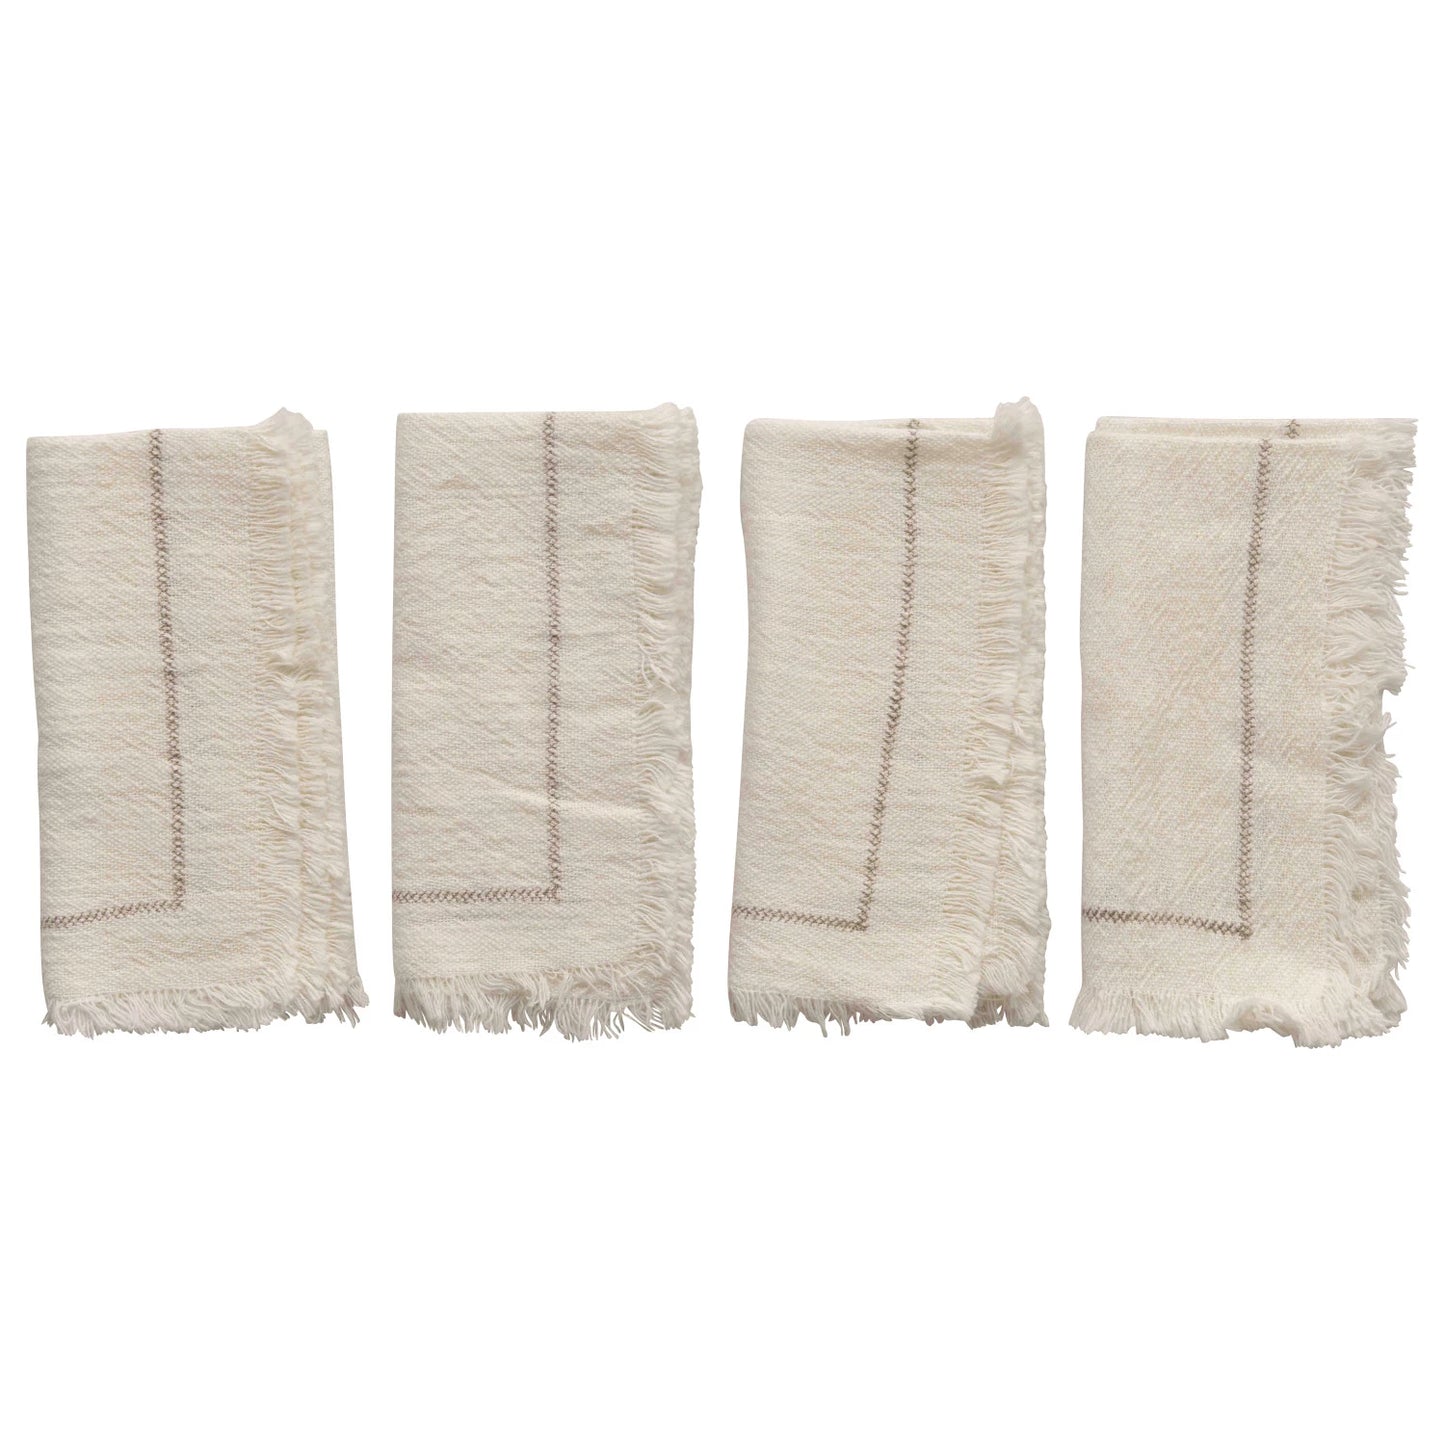 Cotton Napkins with Fringe, Set of 4